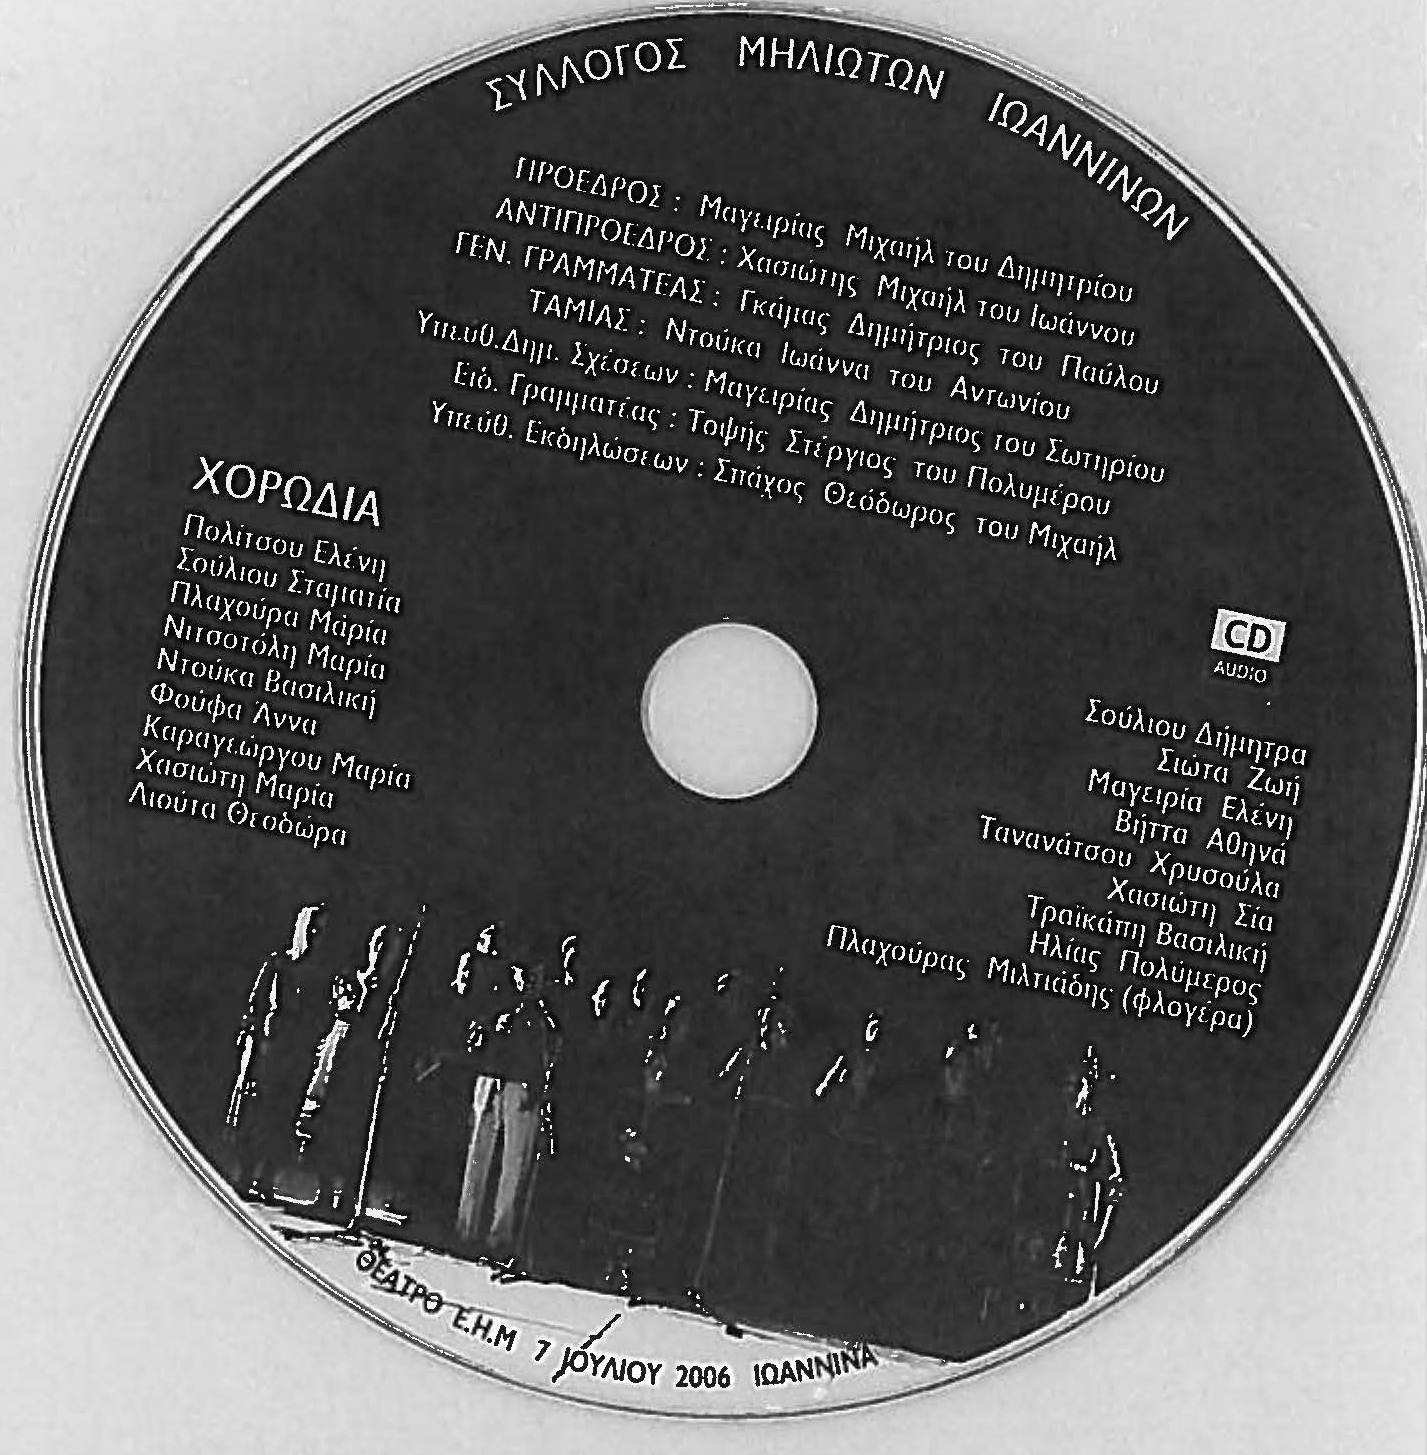 ΣΥΛΛΟΓΟΣ ΜΗΛΙΩΤΩΝ ΙΩΑΝΝΙΝΩΝ - ΤΡΑΧΟΥΔΙΑ ΜΗΛΙΑΣ ΜΕΤΣΟΒΟΥ 2009 CD1